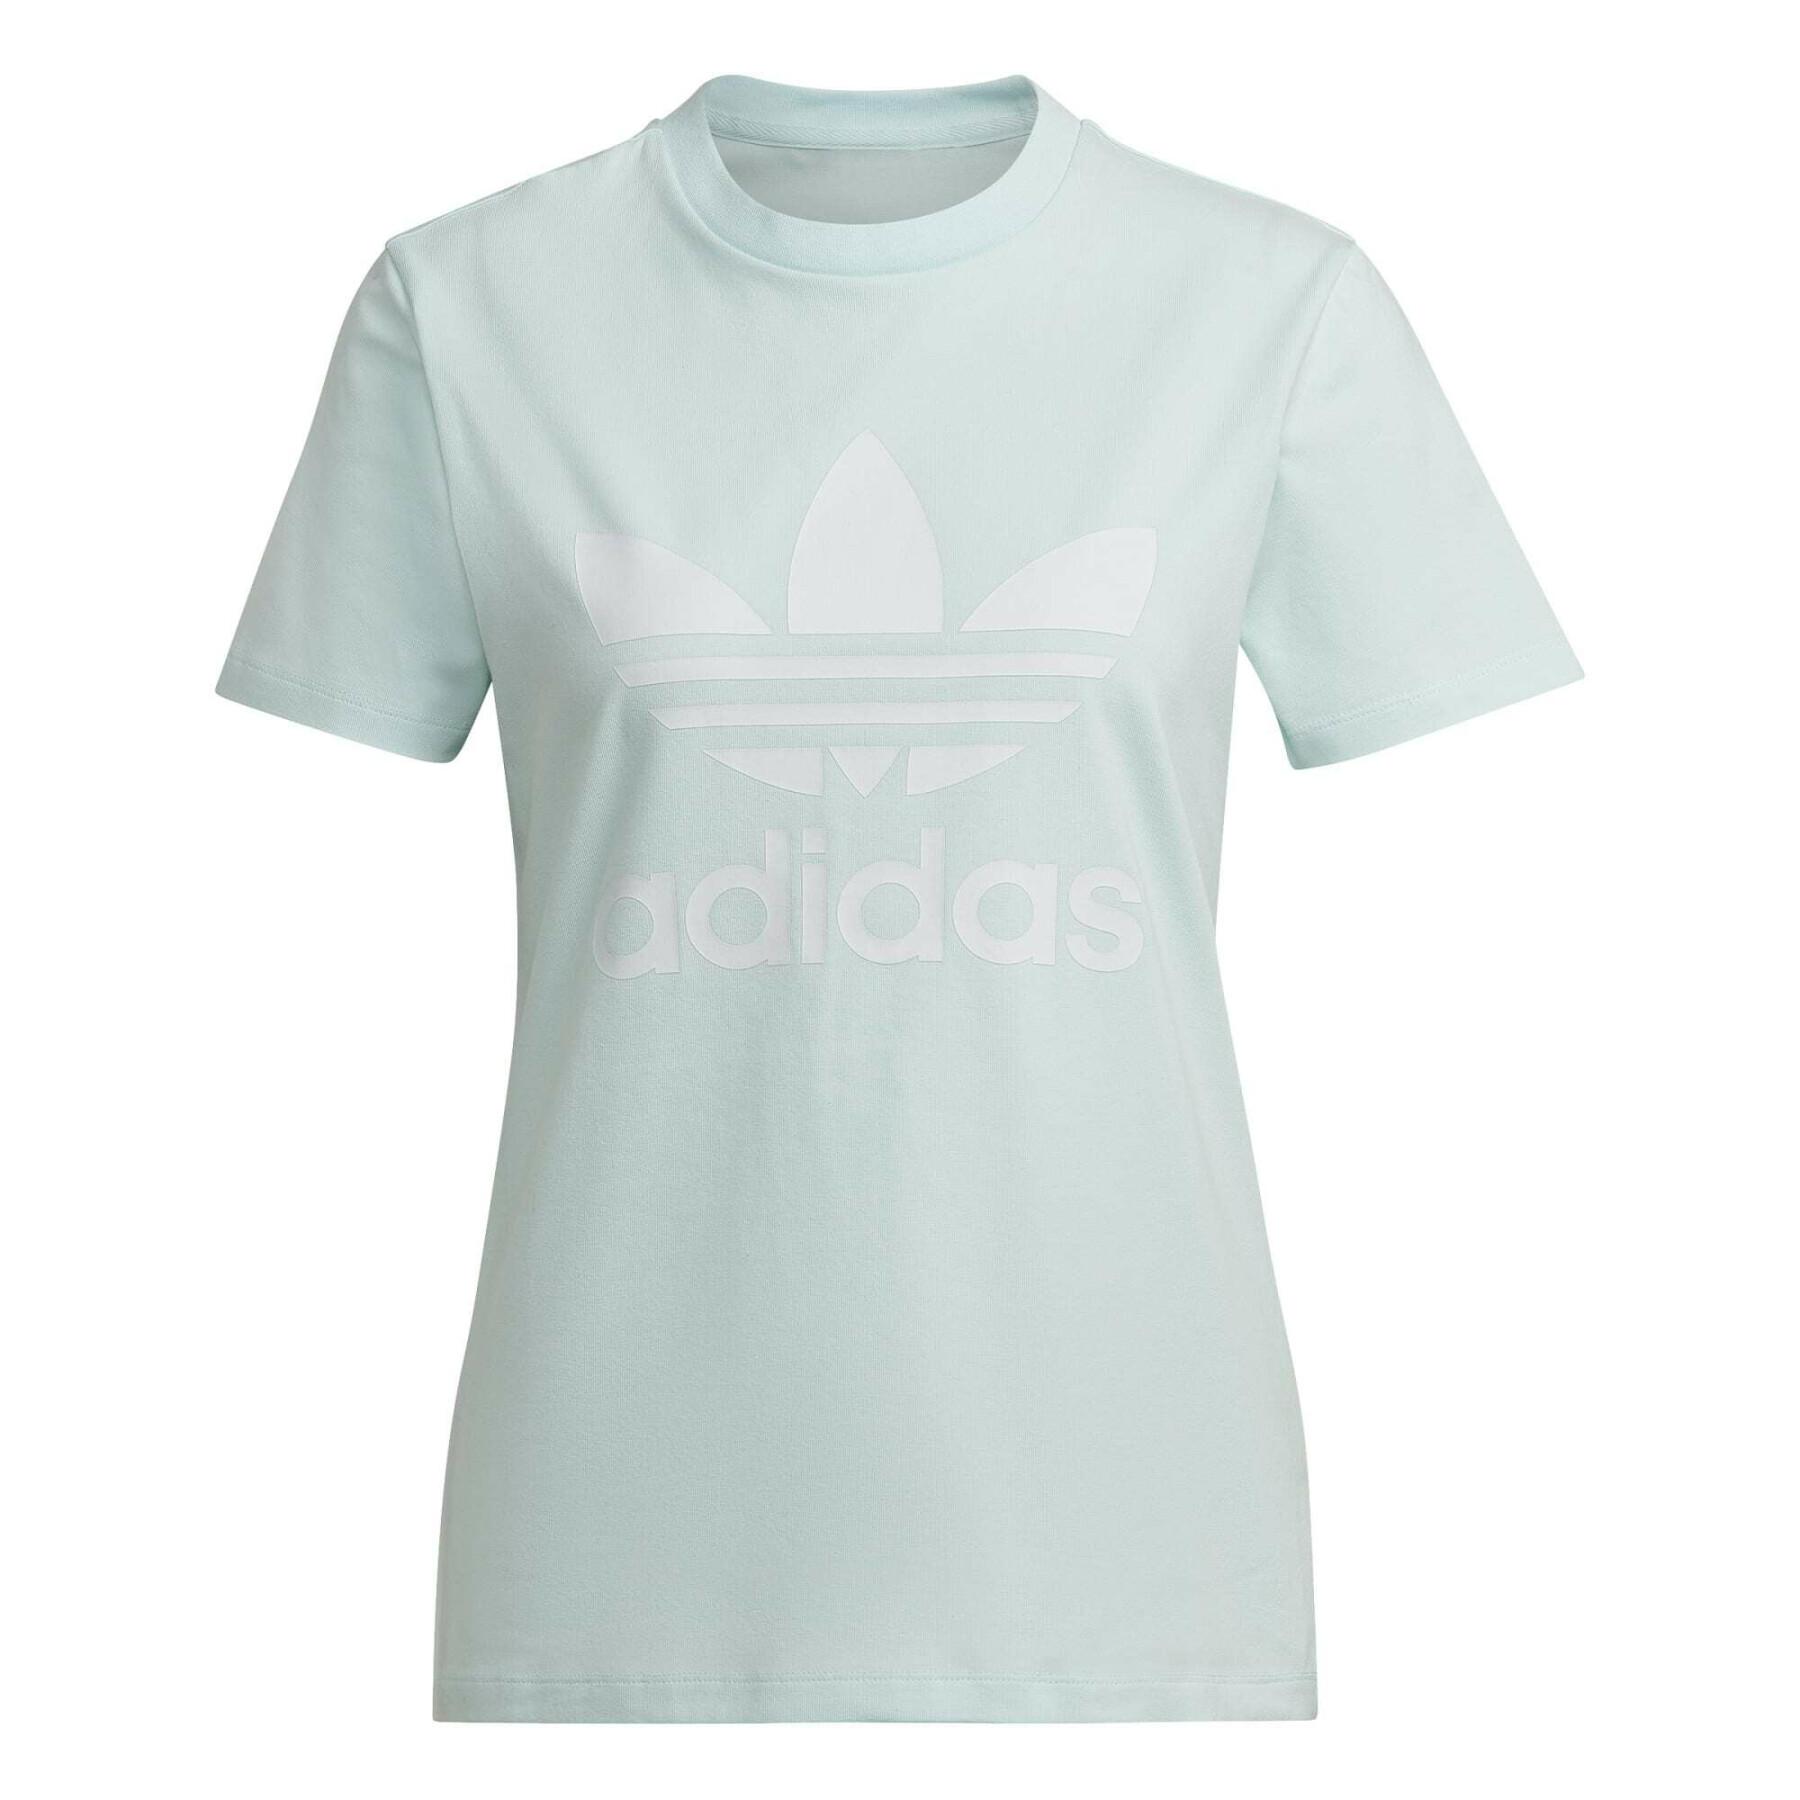 Dames-T-shirt adidas Originals Adicolor Classics Trefoil